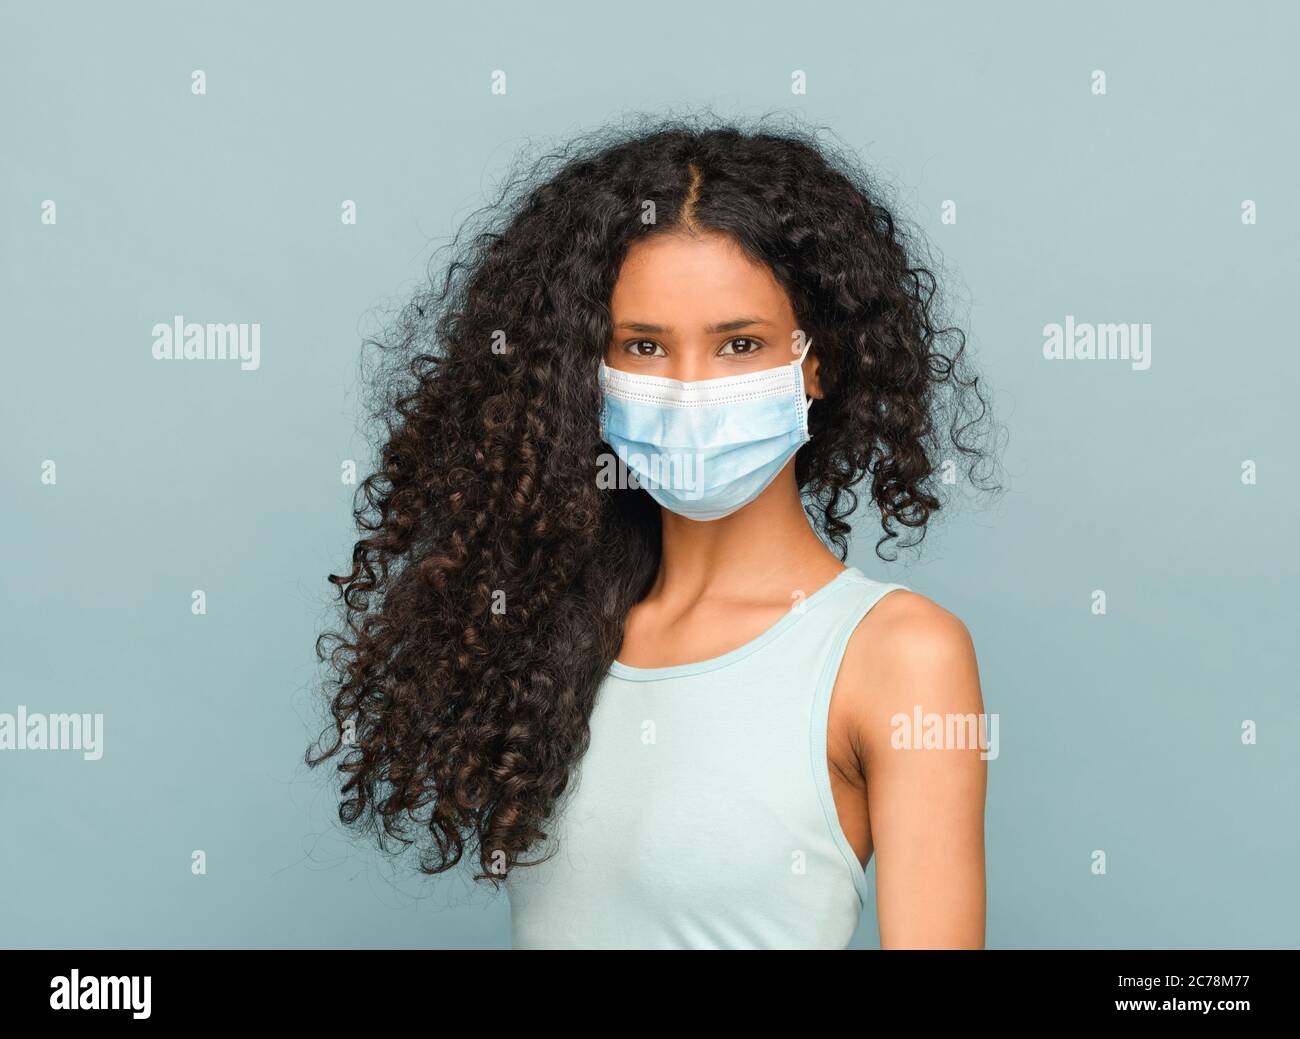 Jeune fille afro-américaine avec des cheveux longs et bouclés noirs portant un masque facial comme protection contre le coronavirus ou Covid-19 pendant la pandémie dans une santece Banque D'Images